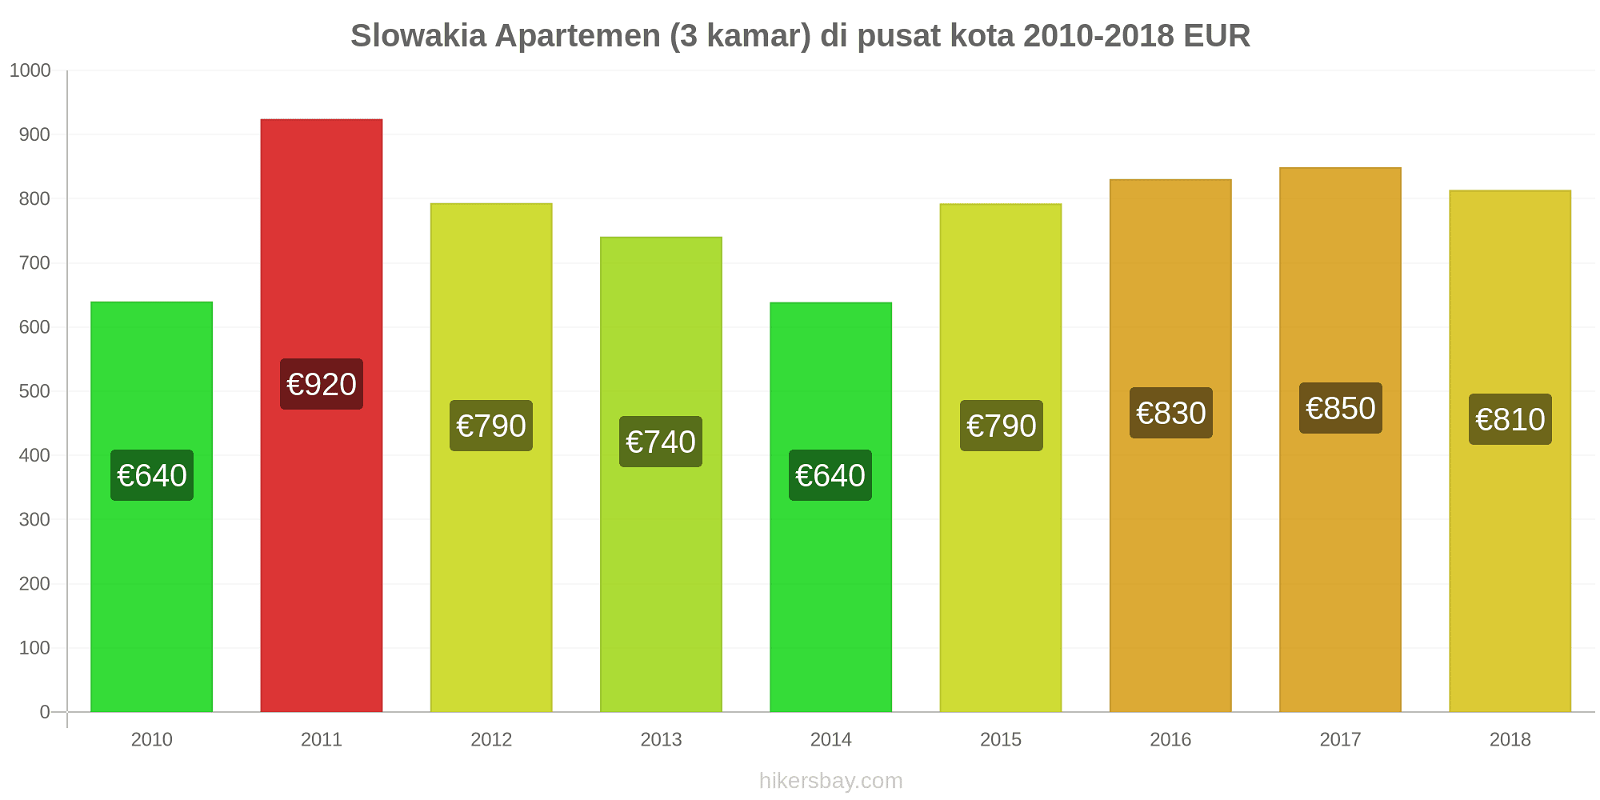 Slowakia perubahan harga Apartemen (3 kamar) di pusat kota hikersbay.com